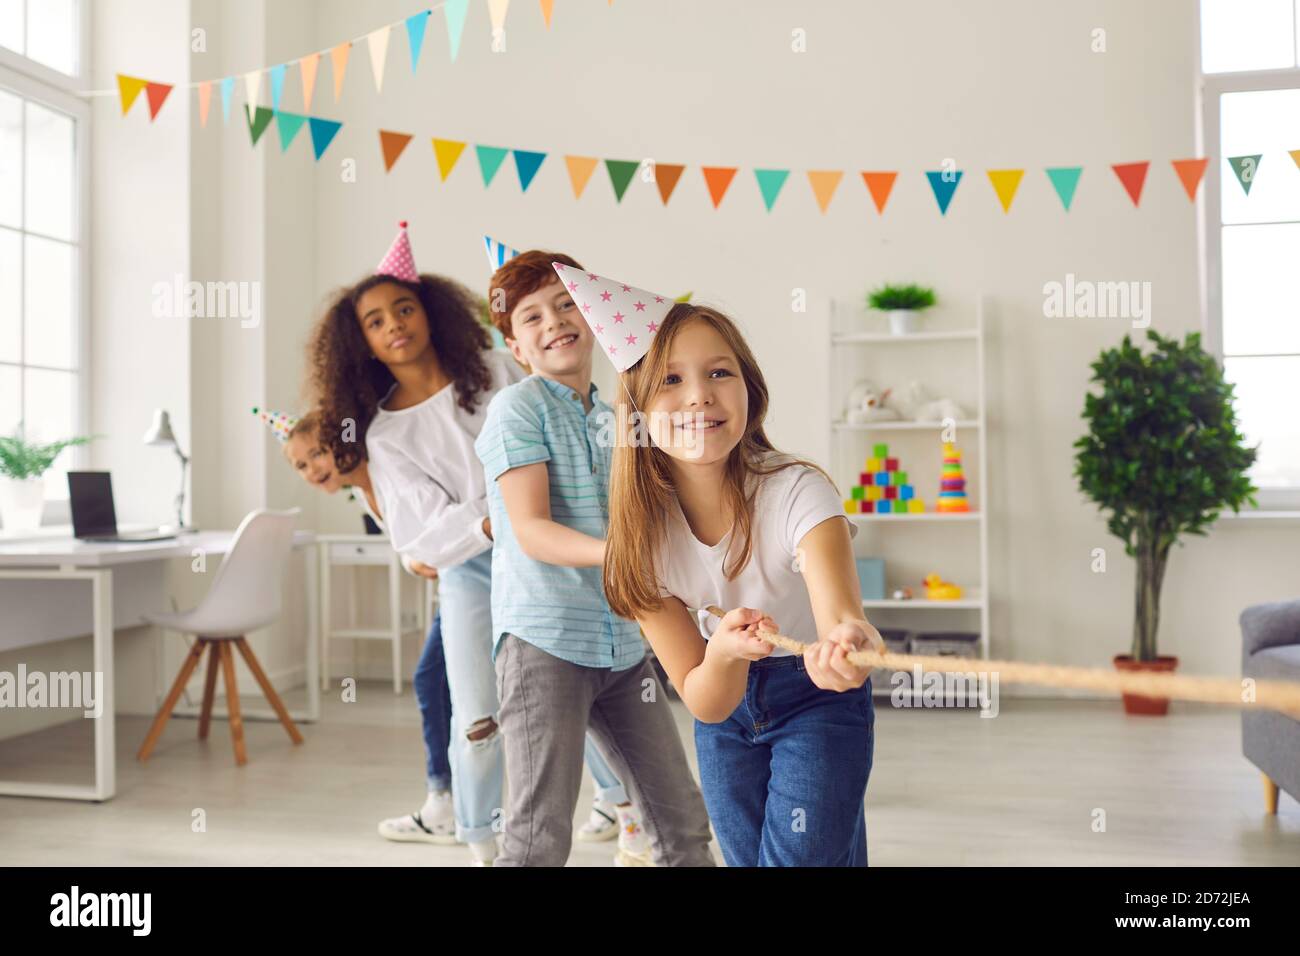 Gruppe glücklicher multirassischer Kinder, die auf der Geburtstagsfeier Tauziehen spielen Zu Hause Stockfoto